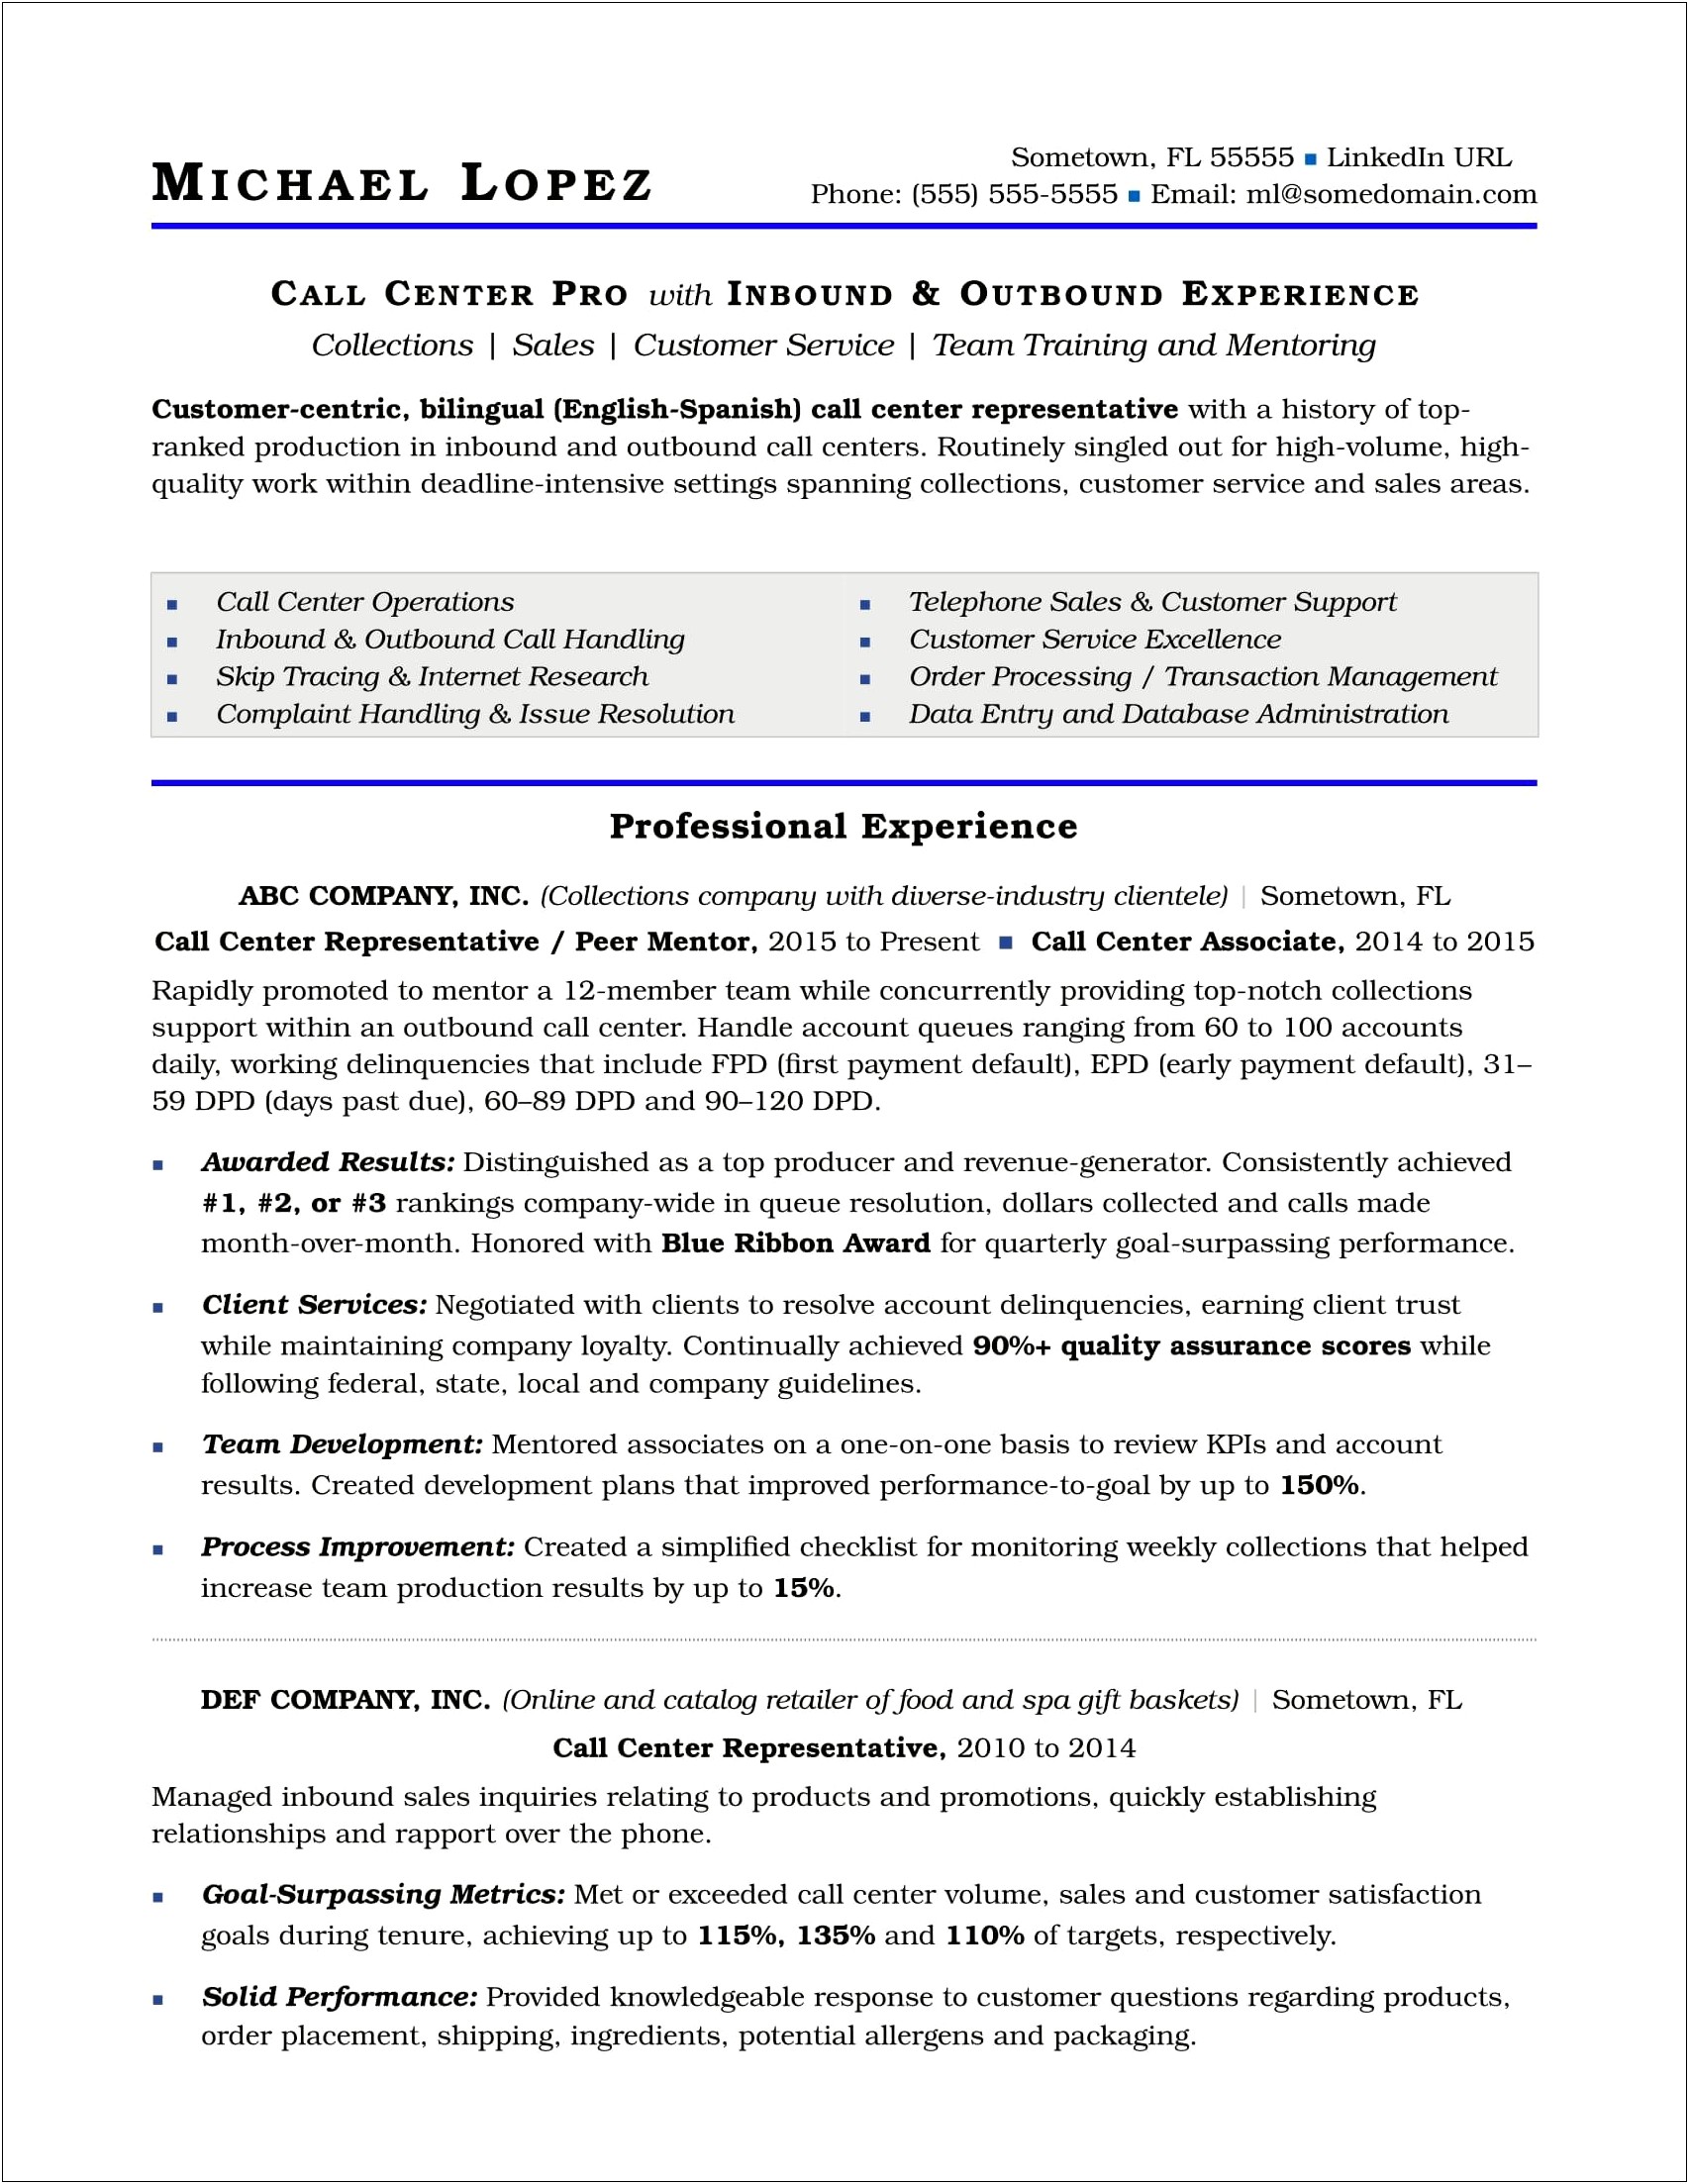 Free Resume Samples For Call Center Supervisor